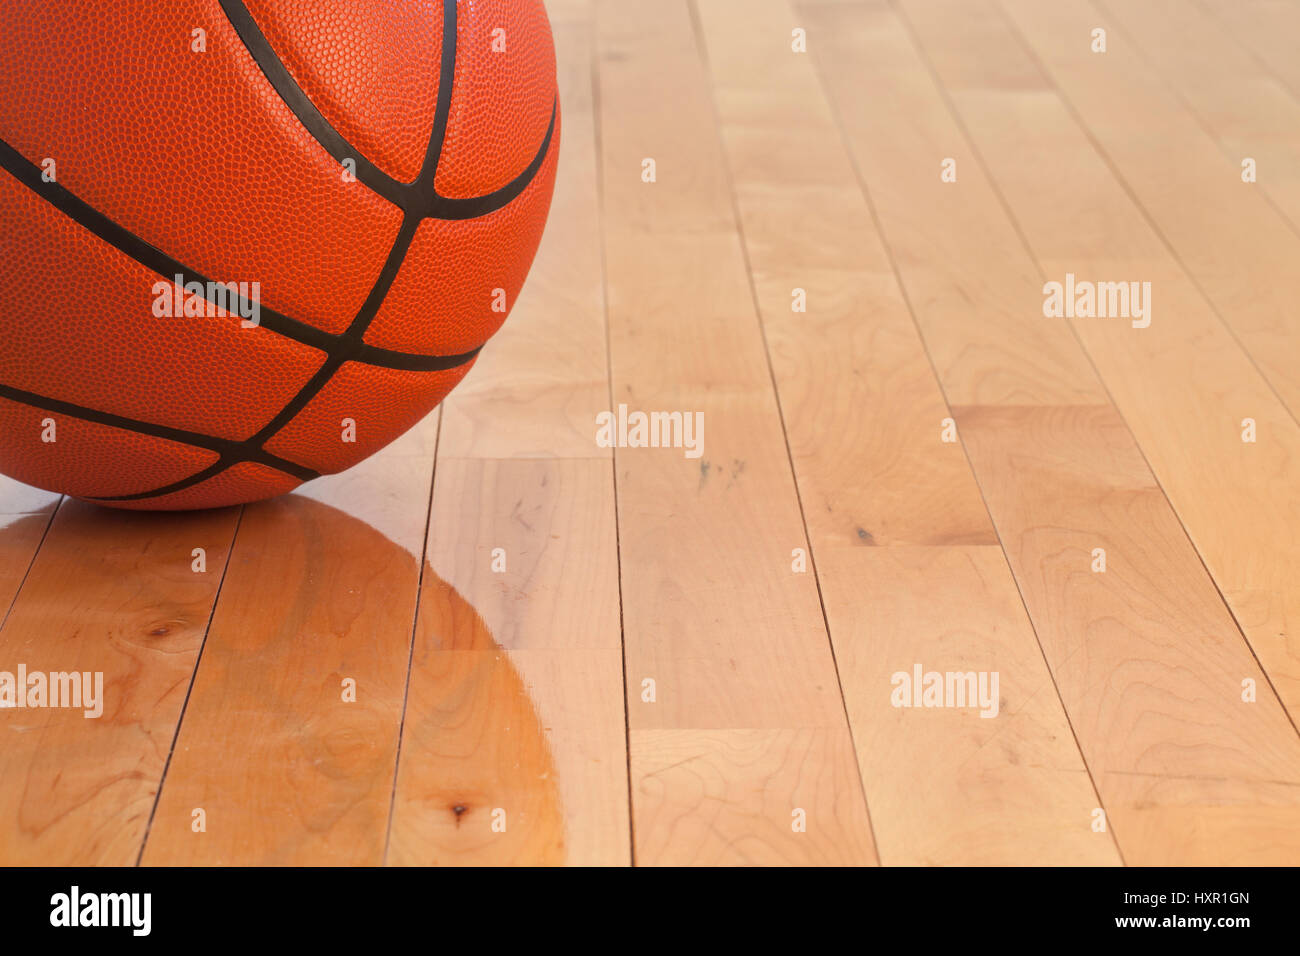 Low angle view of a basket-ball sur un plancher de gymnase en bois Banque D'Images